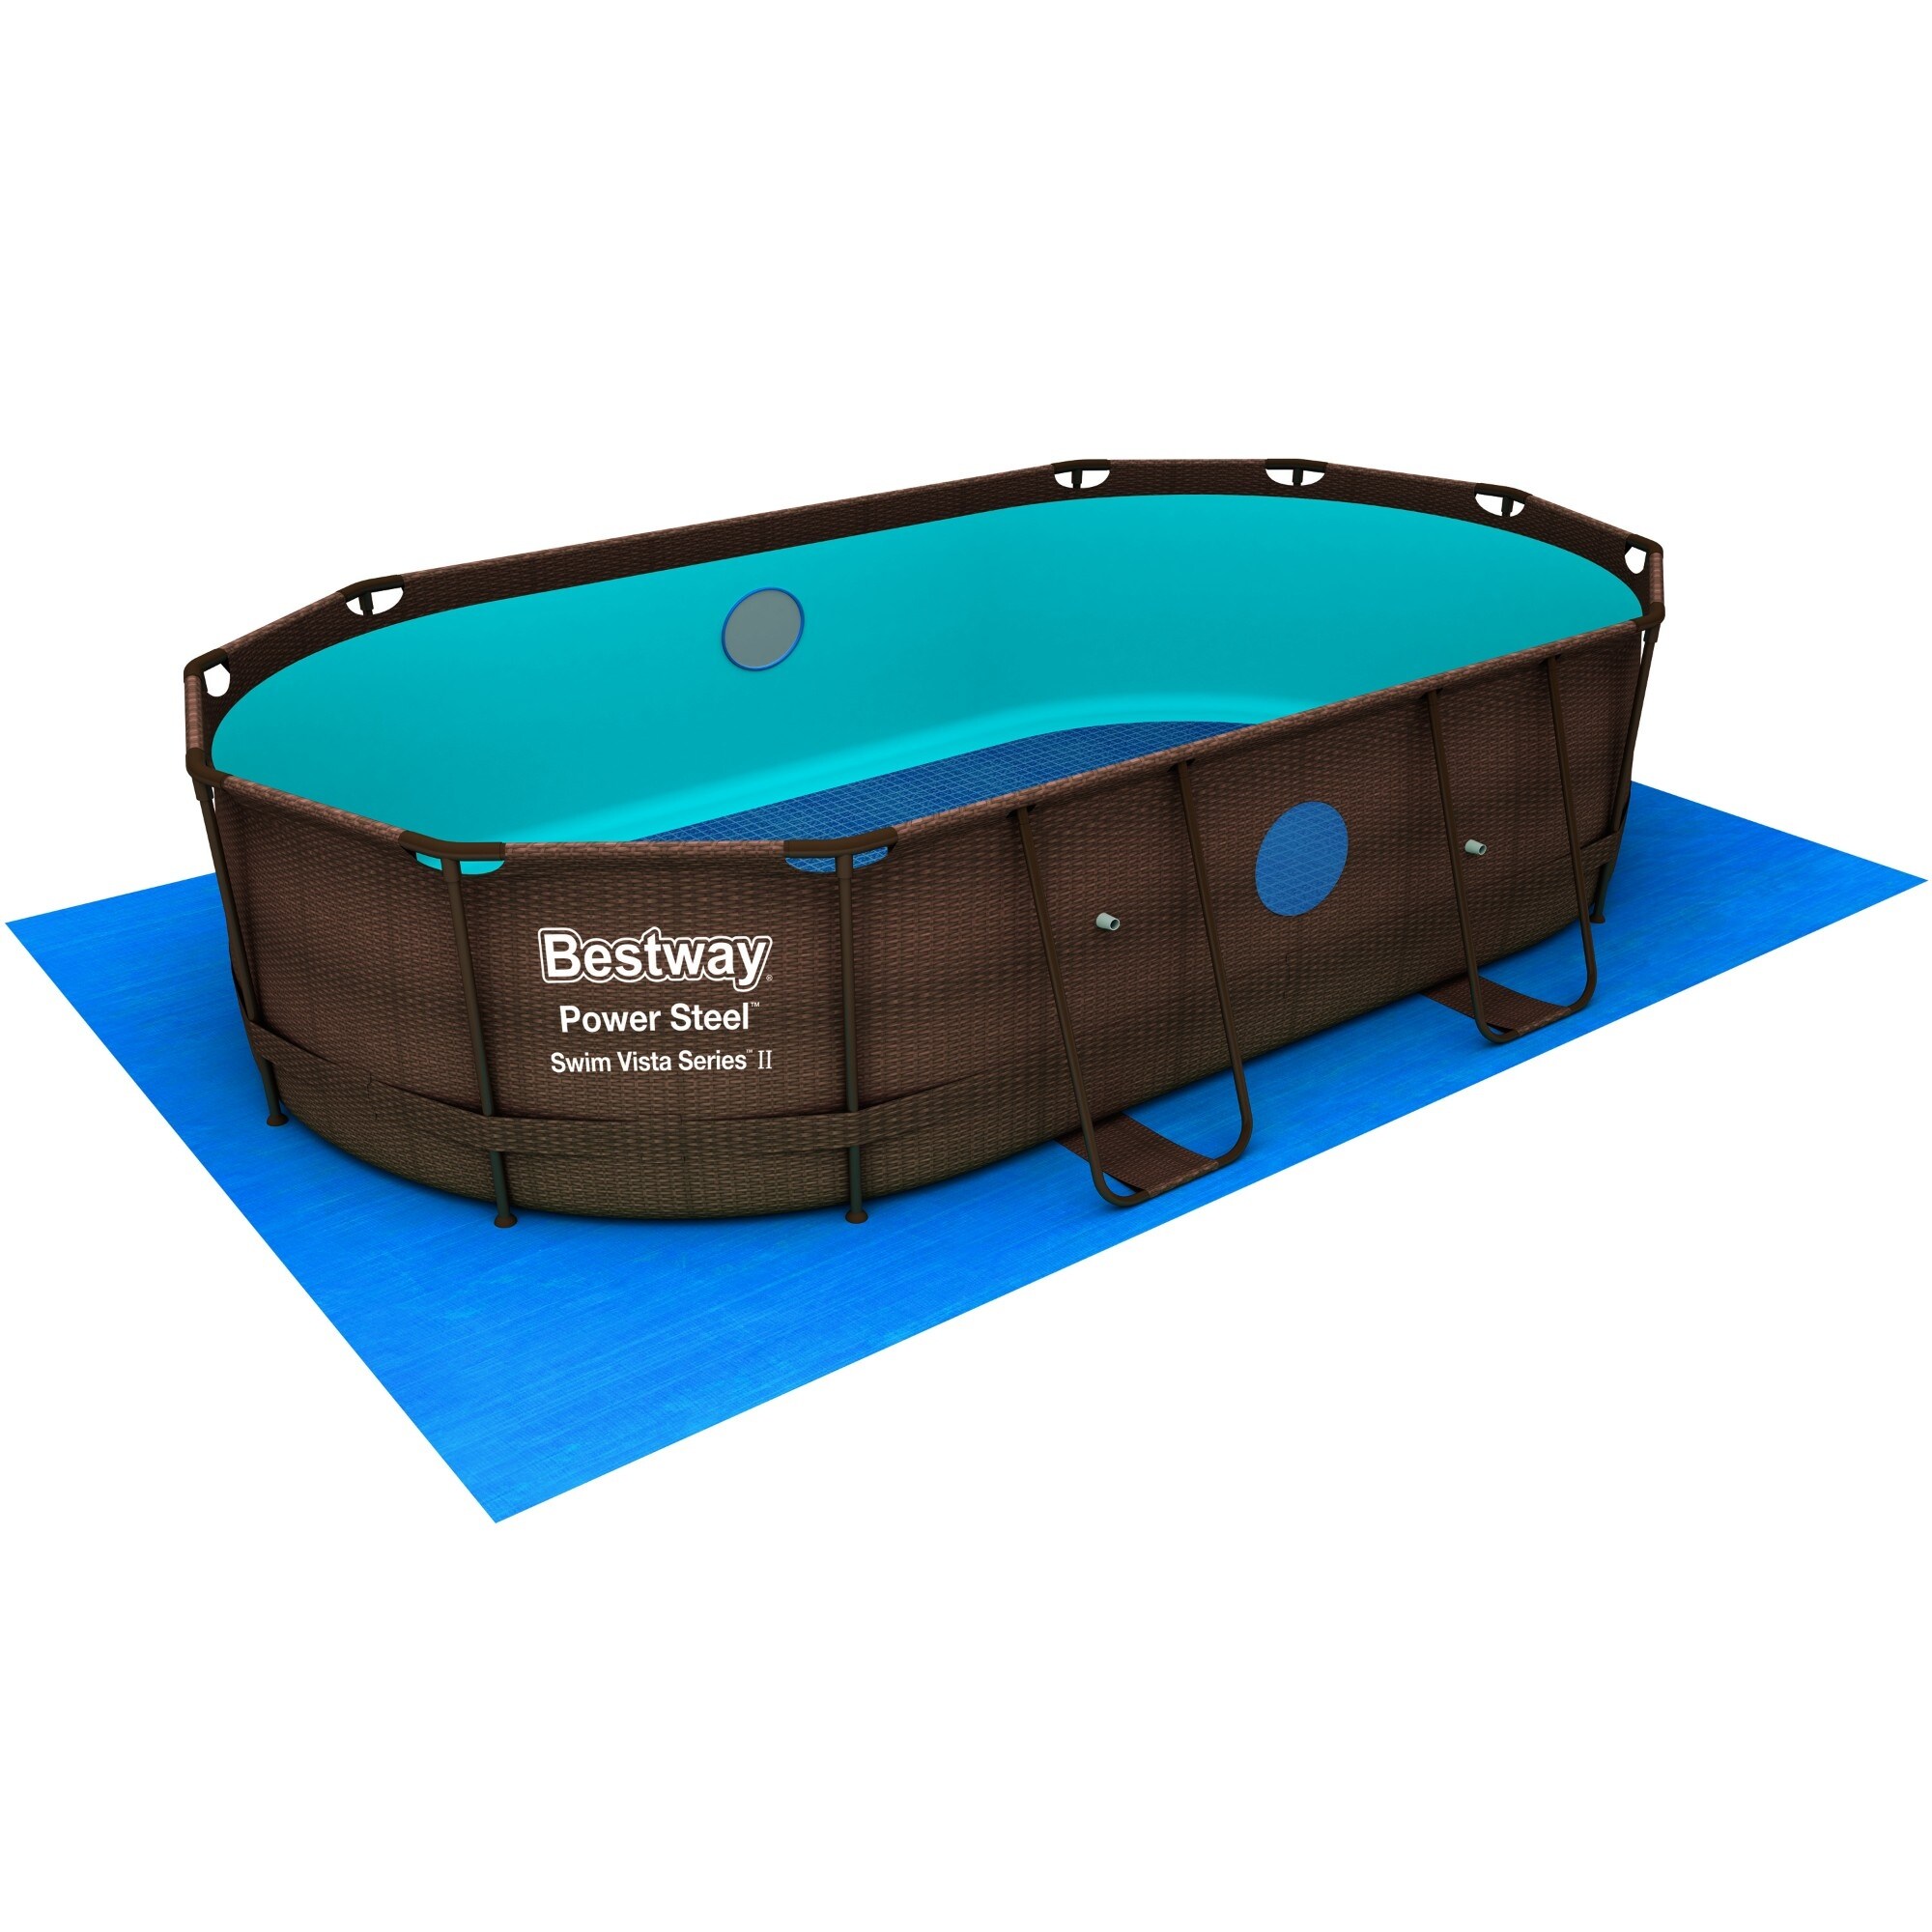 Bestway Power Steel Swim Vista in x & Beyond ft Oval Bed 39.5 35796620 ft 8 Pool Series - Bath Set - 2 in x 14